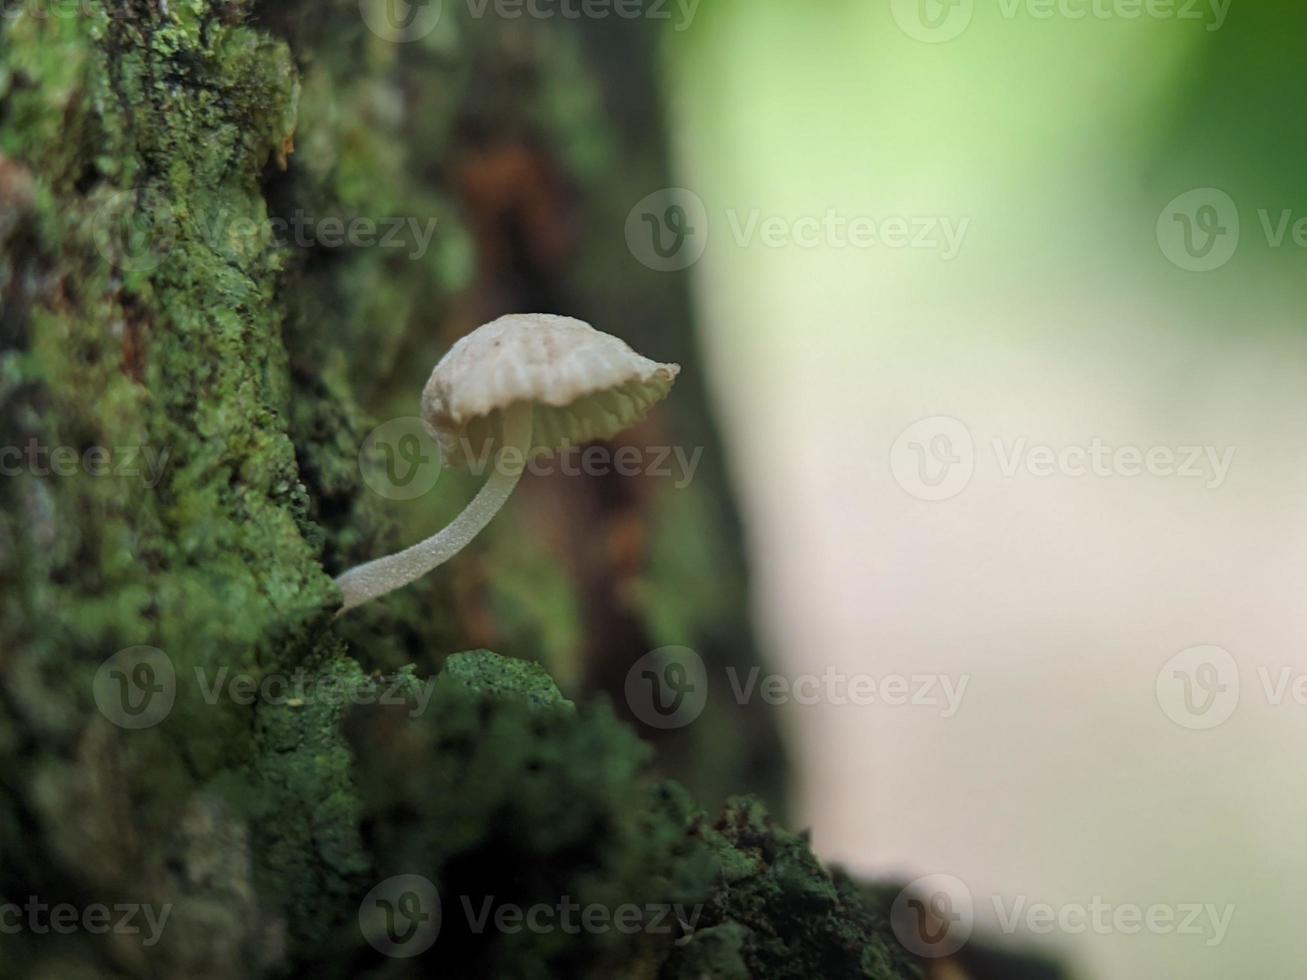 vista única de un hongo blanco luminoso que crece en un tronco de árbol foto